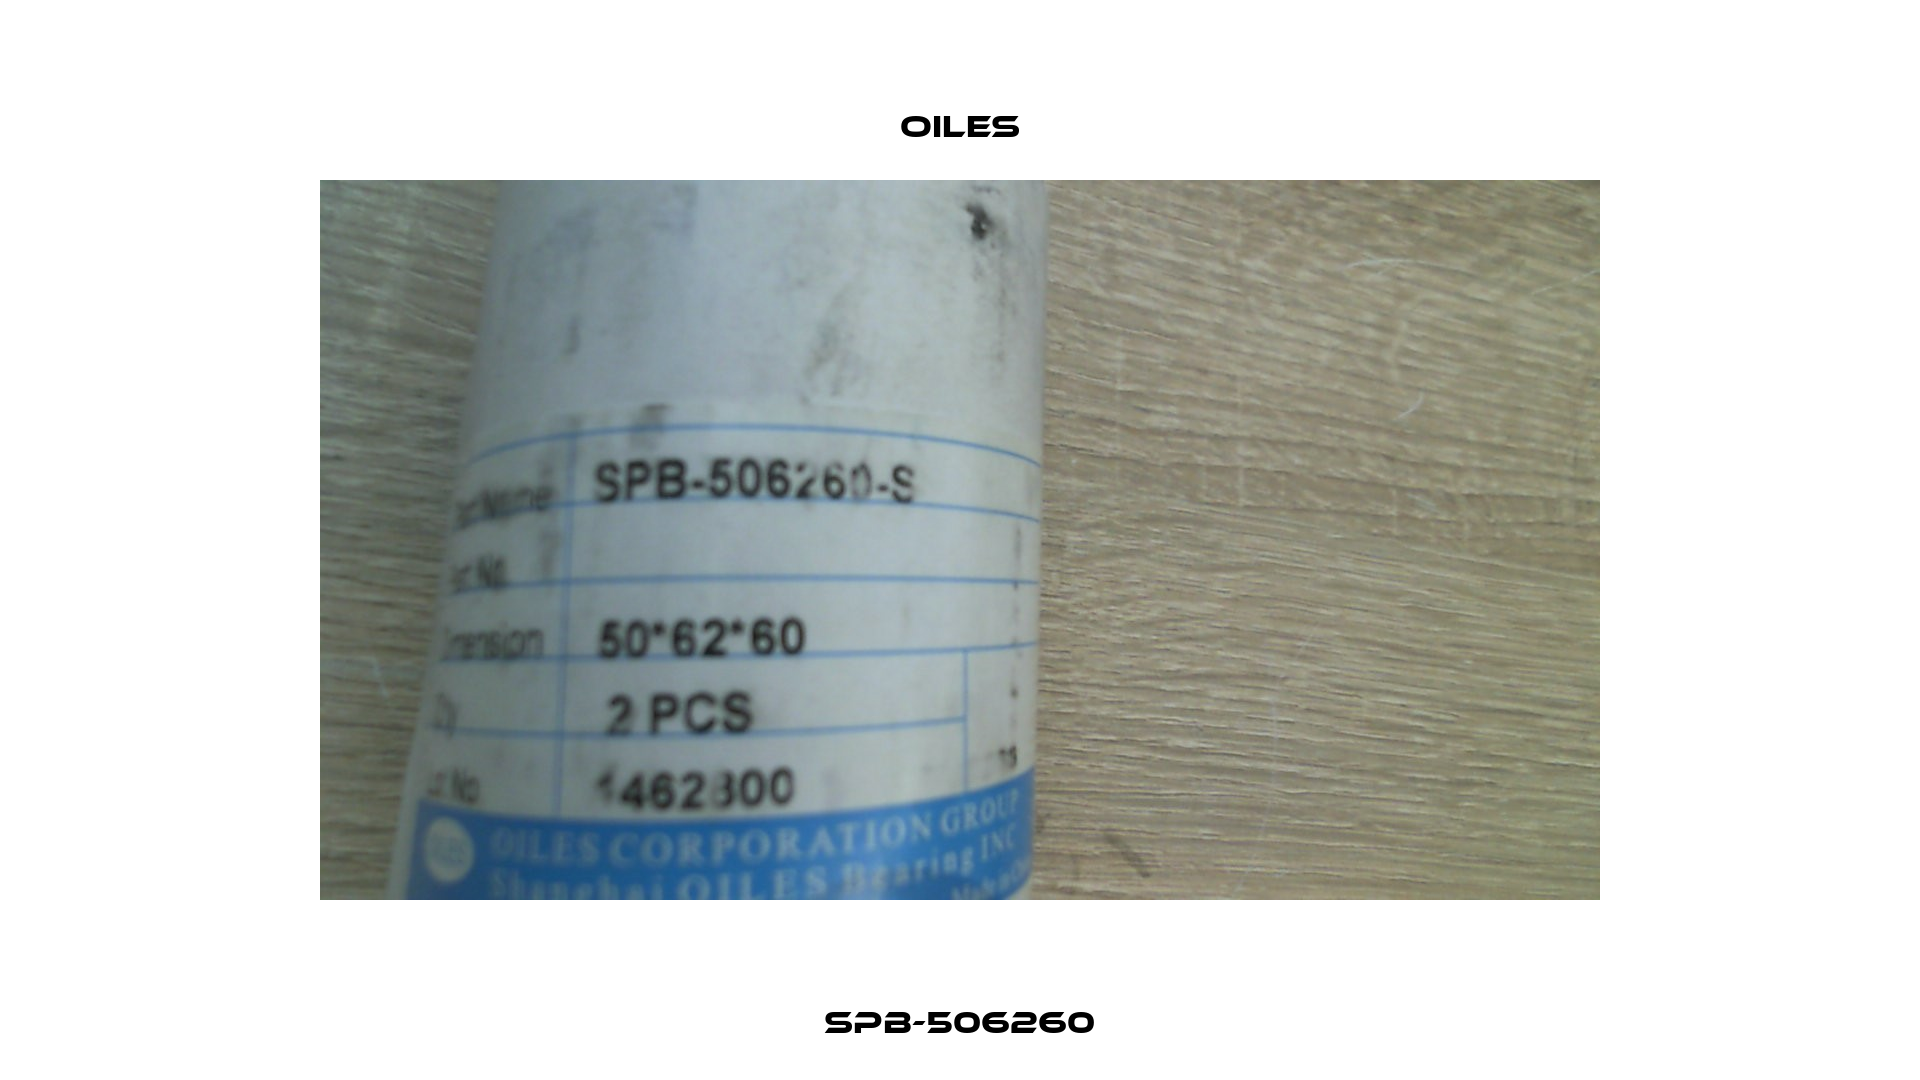 SPB-506260 Oiles